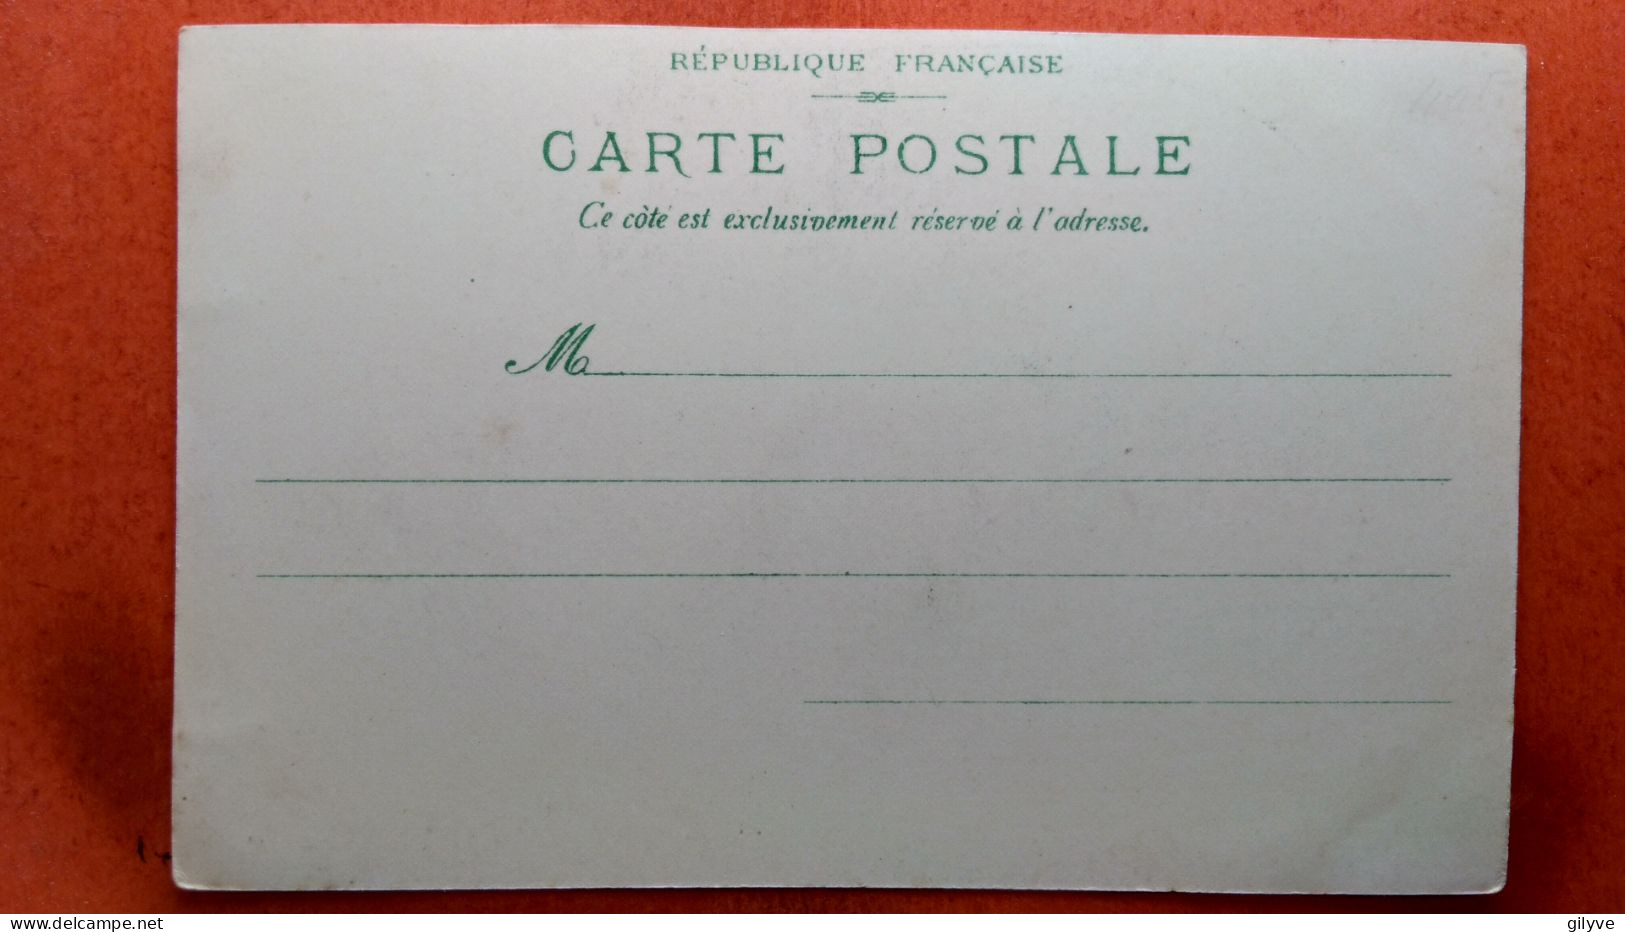 CPA (75) Exposition Universelle De Paris.1900  " La Ville De Paris"   (7A.478) - Tentoonstellingen